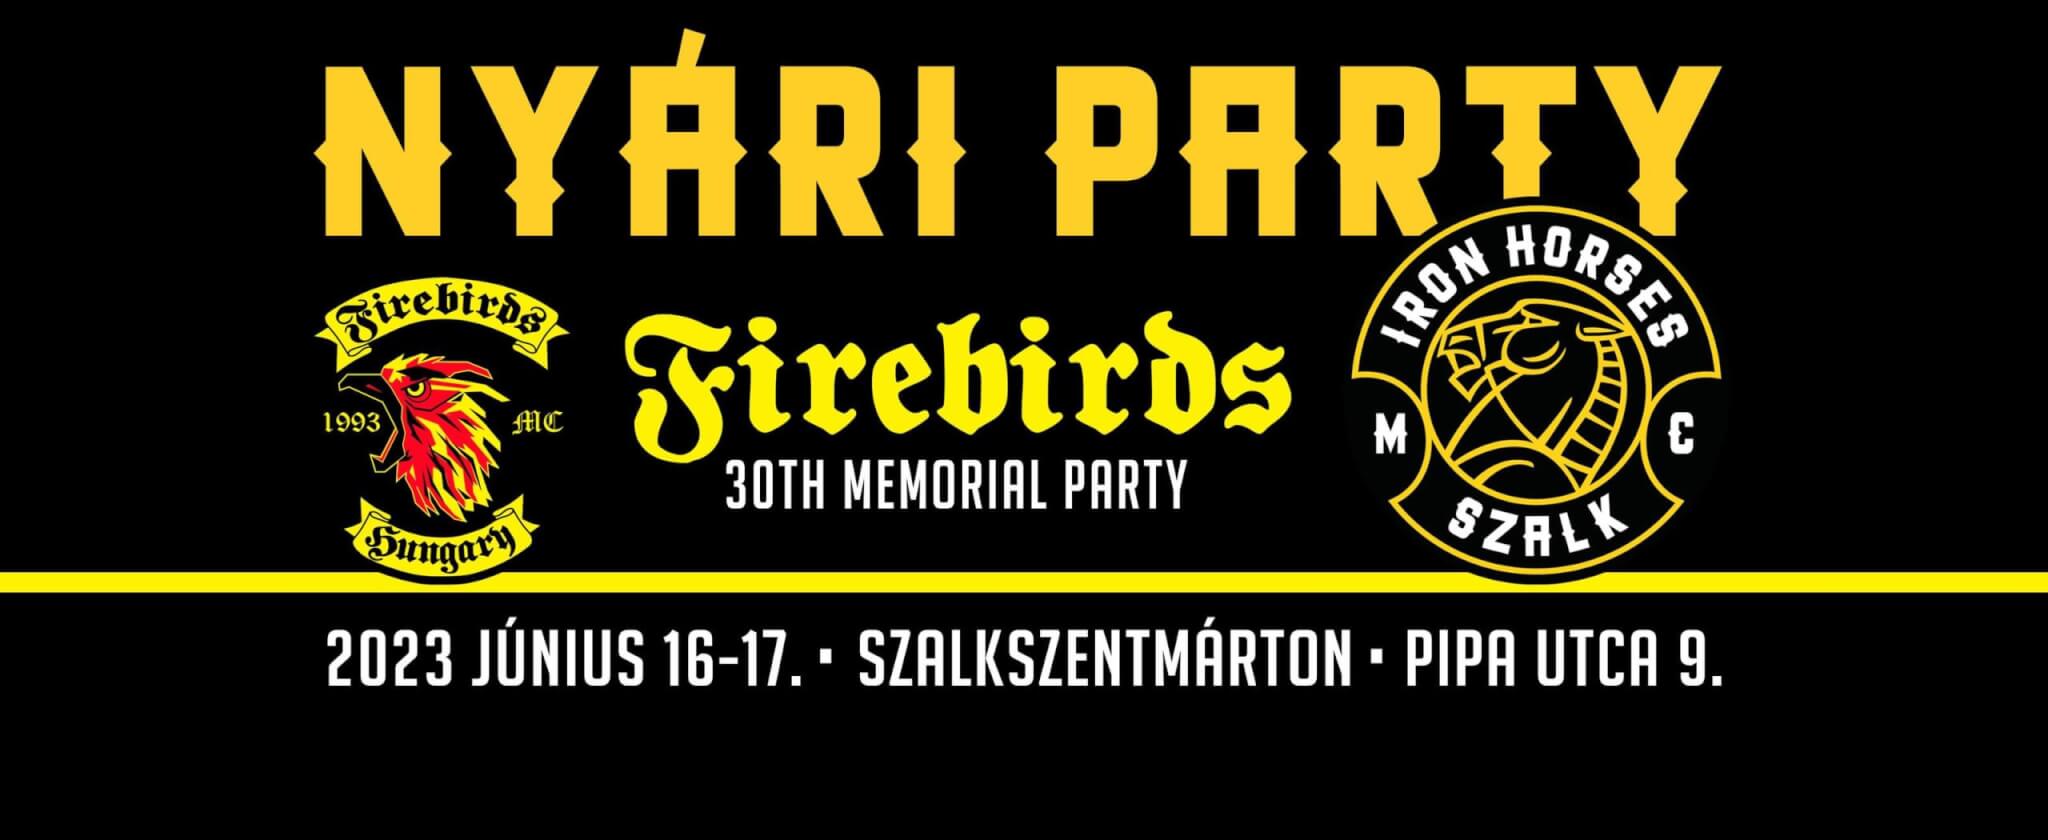 Iron Horses MC Szalk Nyári Party / Summer Party 2023